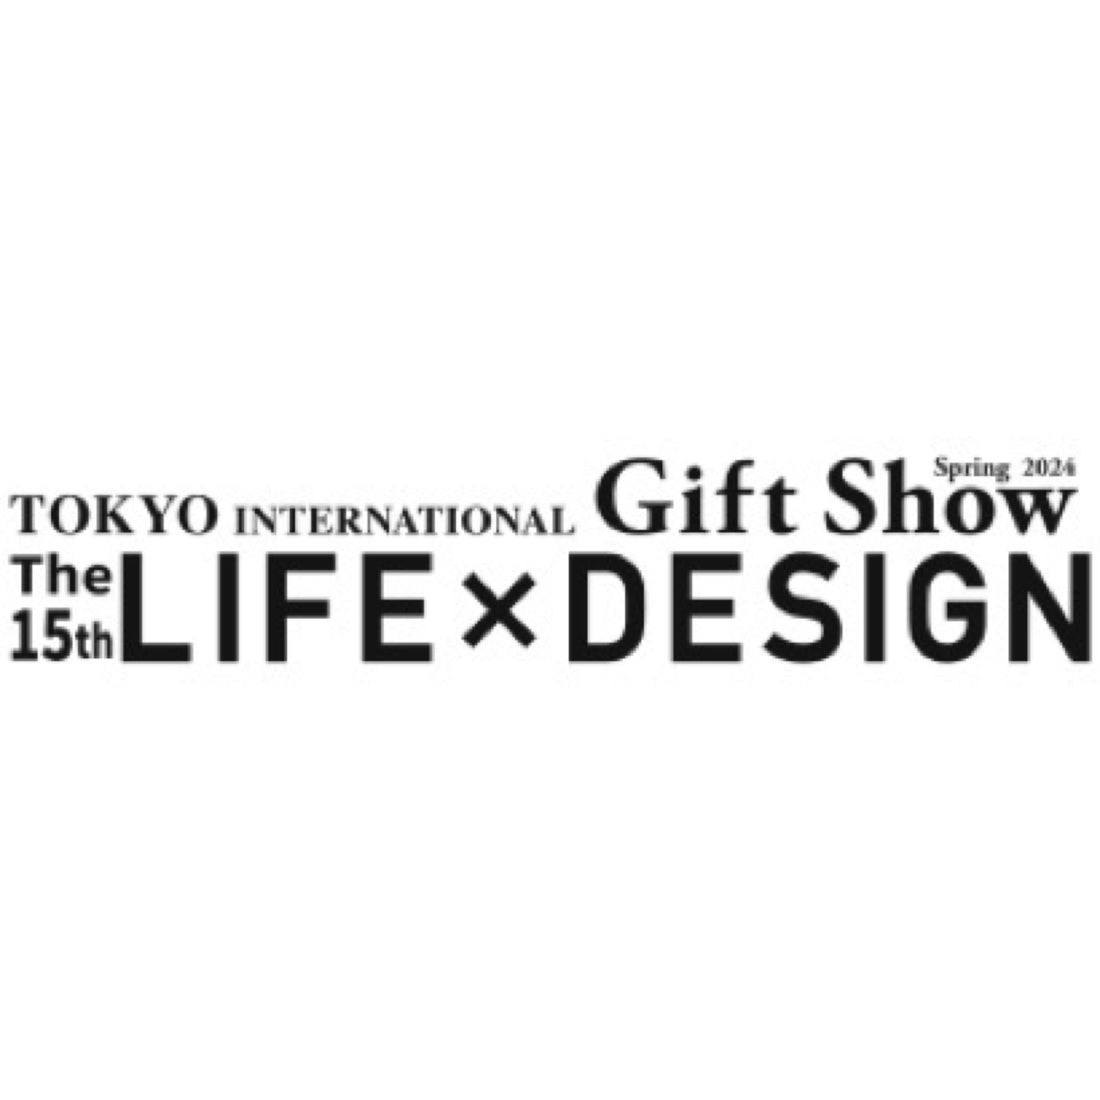 東京インターナショナル・ギフト・ショー春2024〈LIFE×DESIGN〉に出展いたします